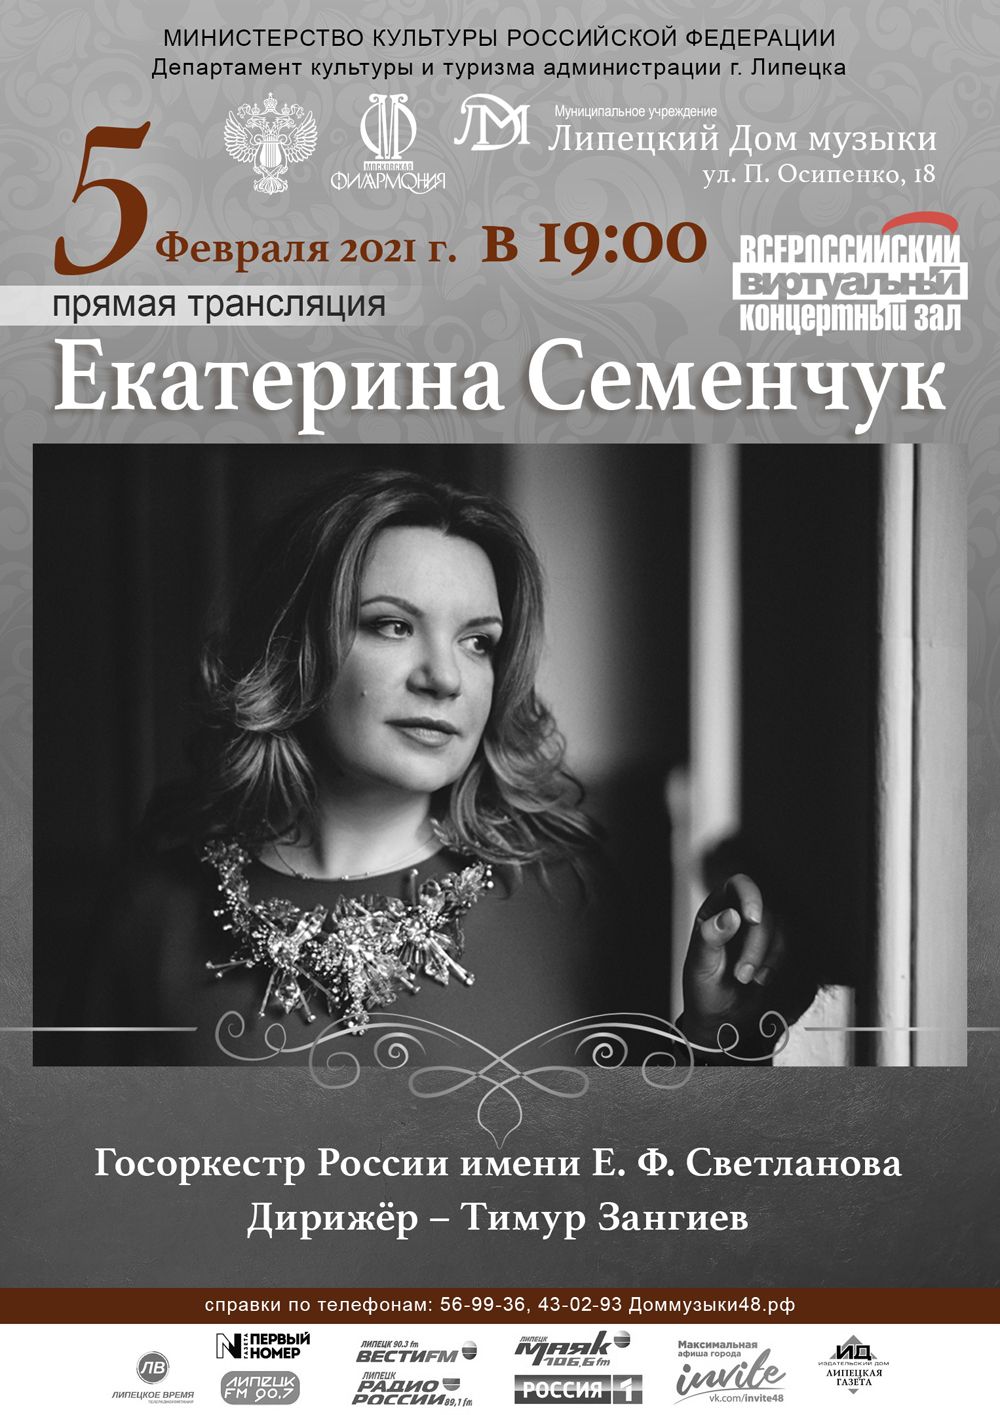 Виртуальный концертный зал: Екатерина Семенчук (05.02.2021 в 19:00)